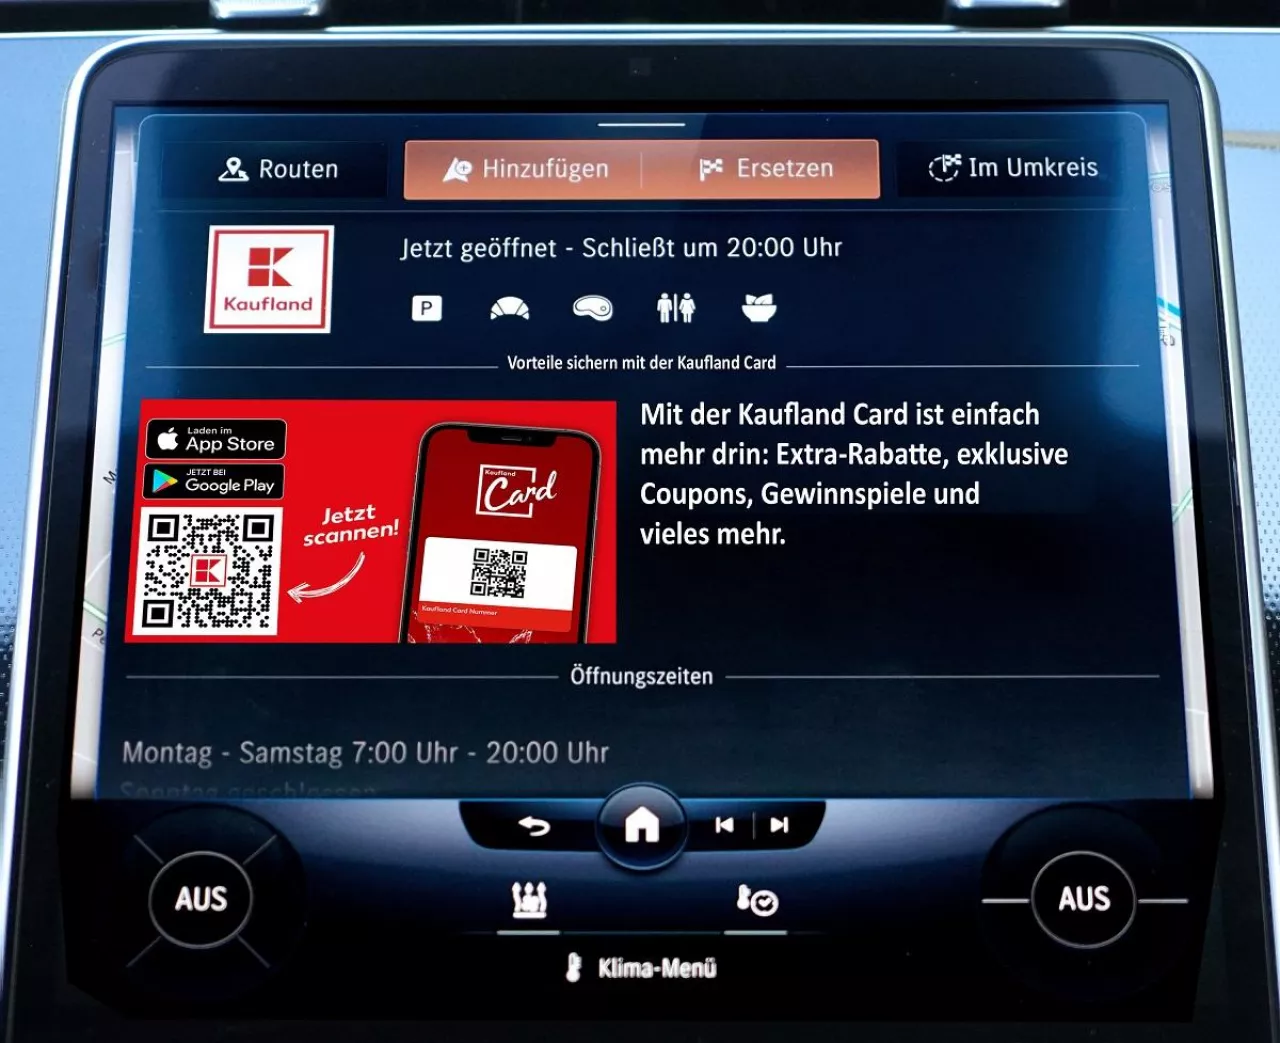 Reklama sieci handlowej Kaufland na ekranie samochodowym (Kaufland)